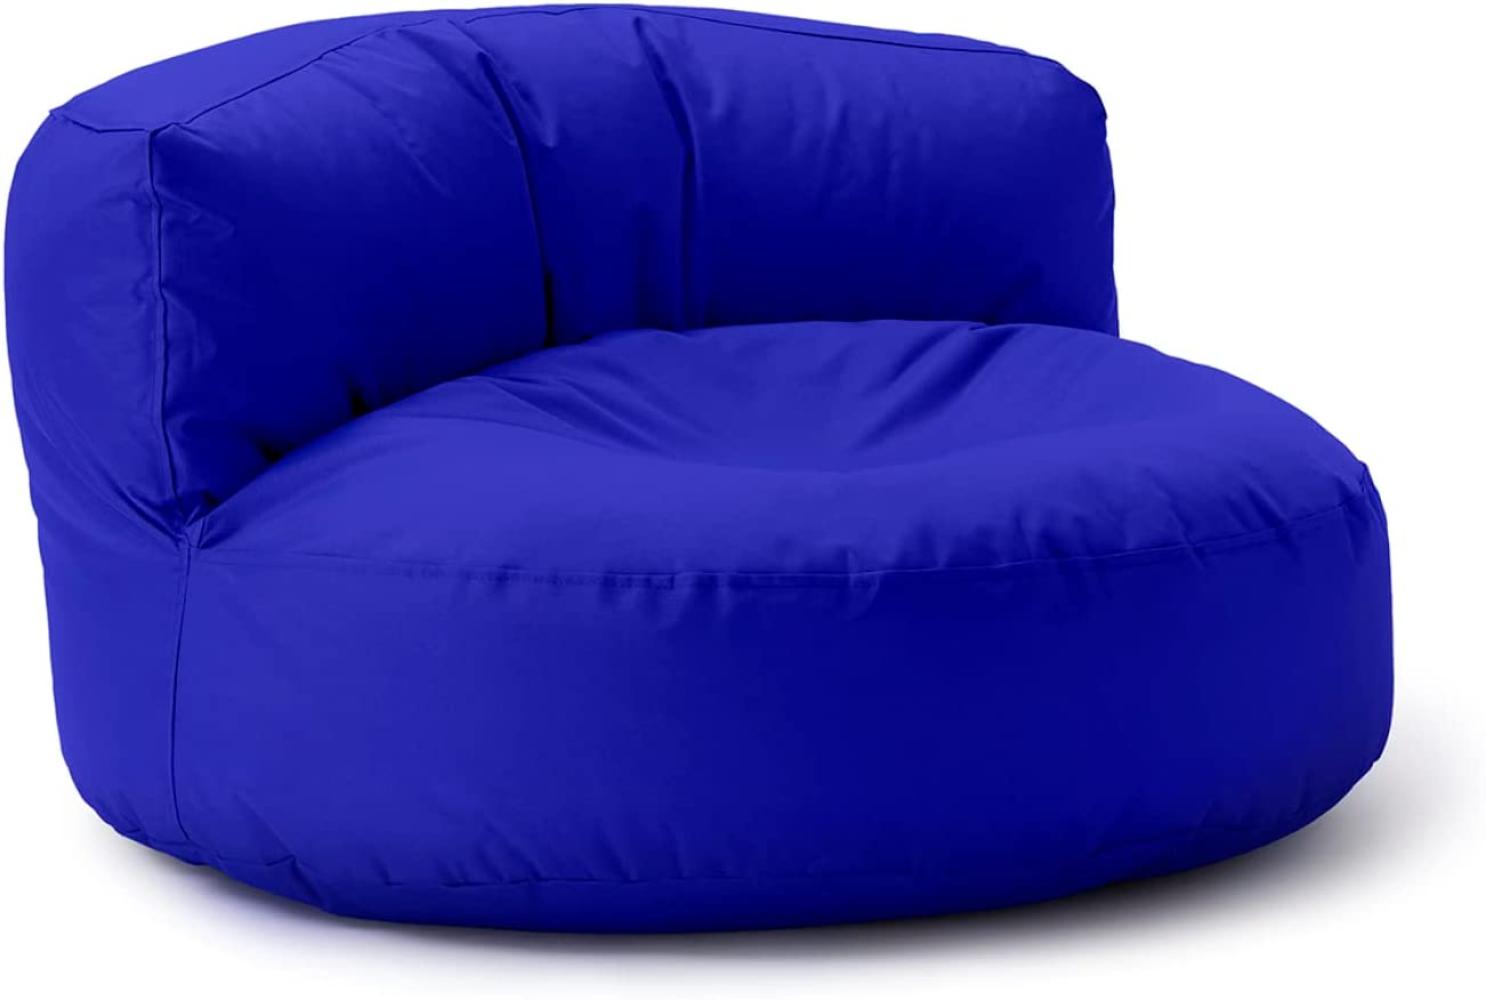 Lumaland Outdoor Sitzsack-Lounge, Rundes Sitzsack-Sofa für draußen, 320l Füllung, 90 x 50 cm, Royalblau Bild 1